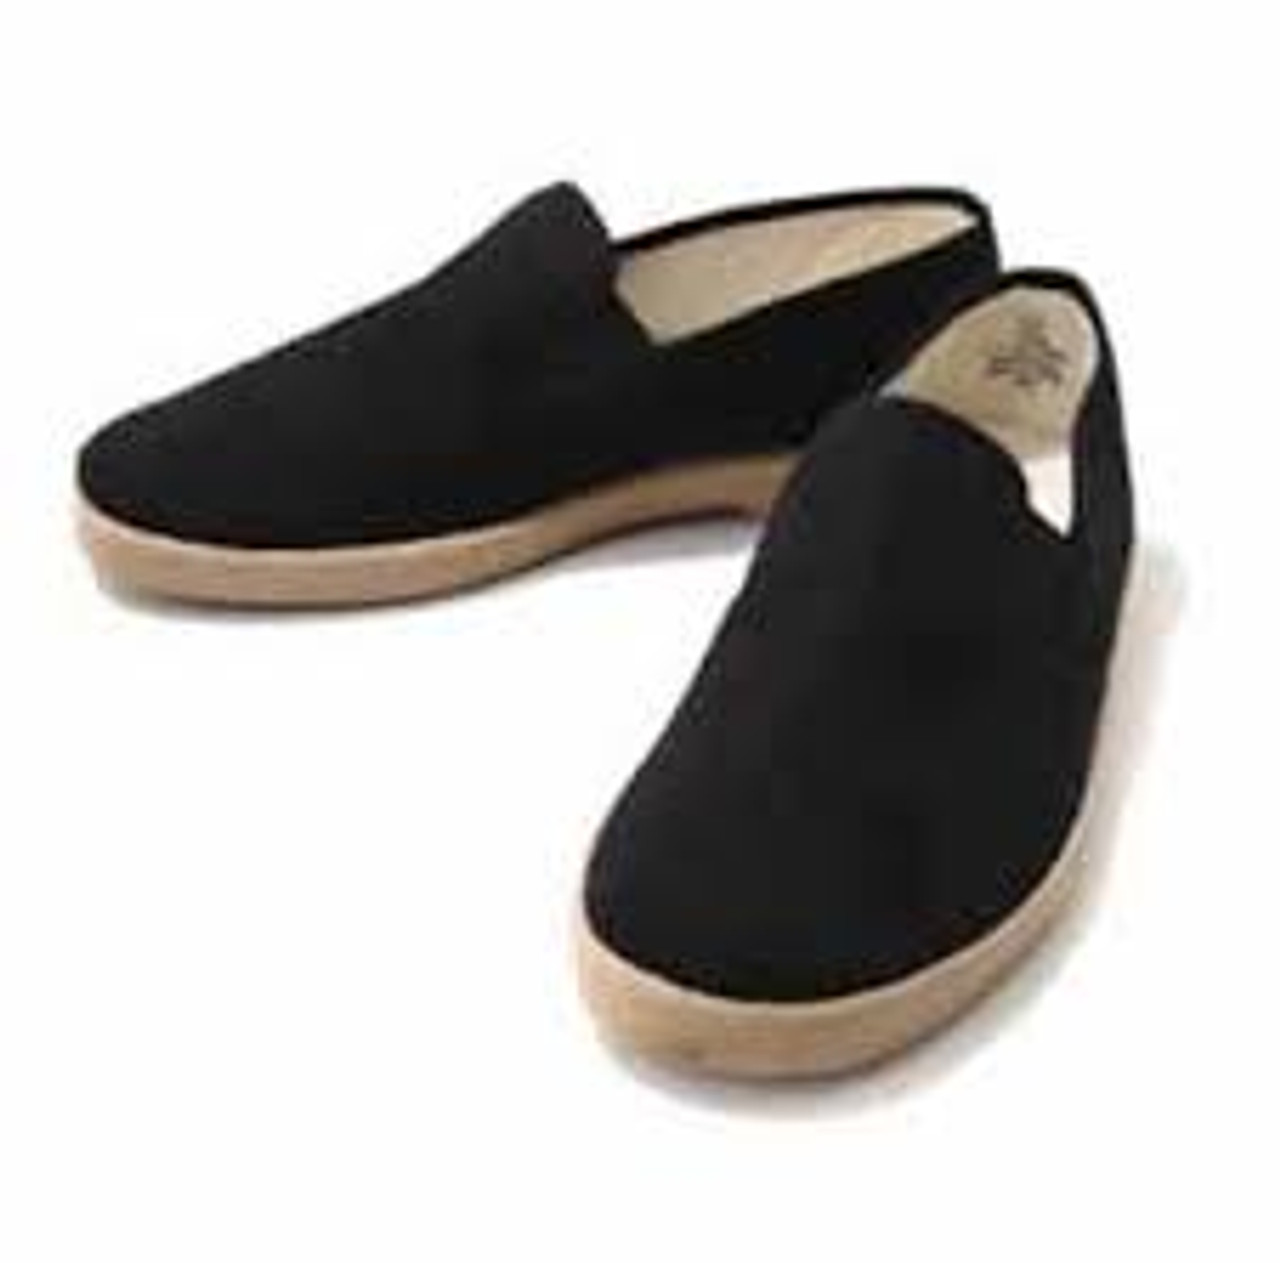 Zig Zag® Slip-On Shoes Black/Gum Sole-7206